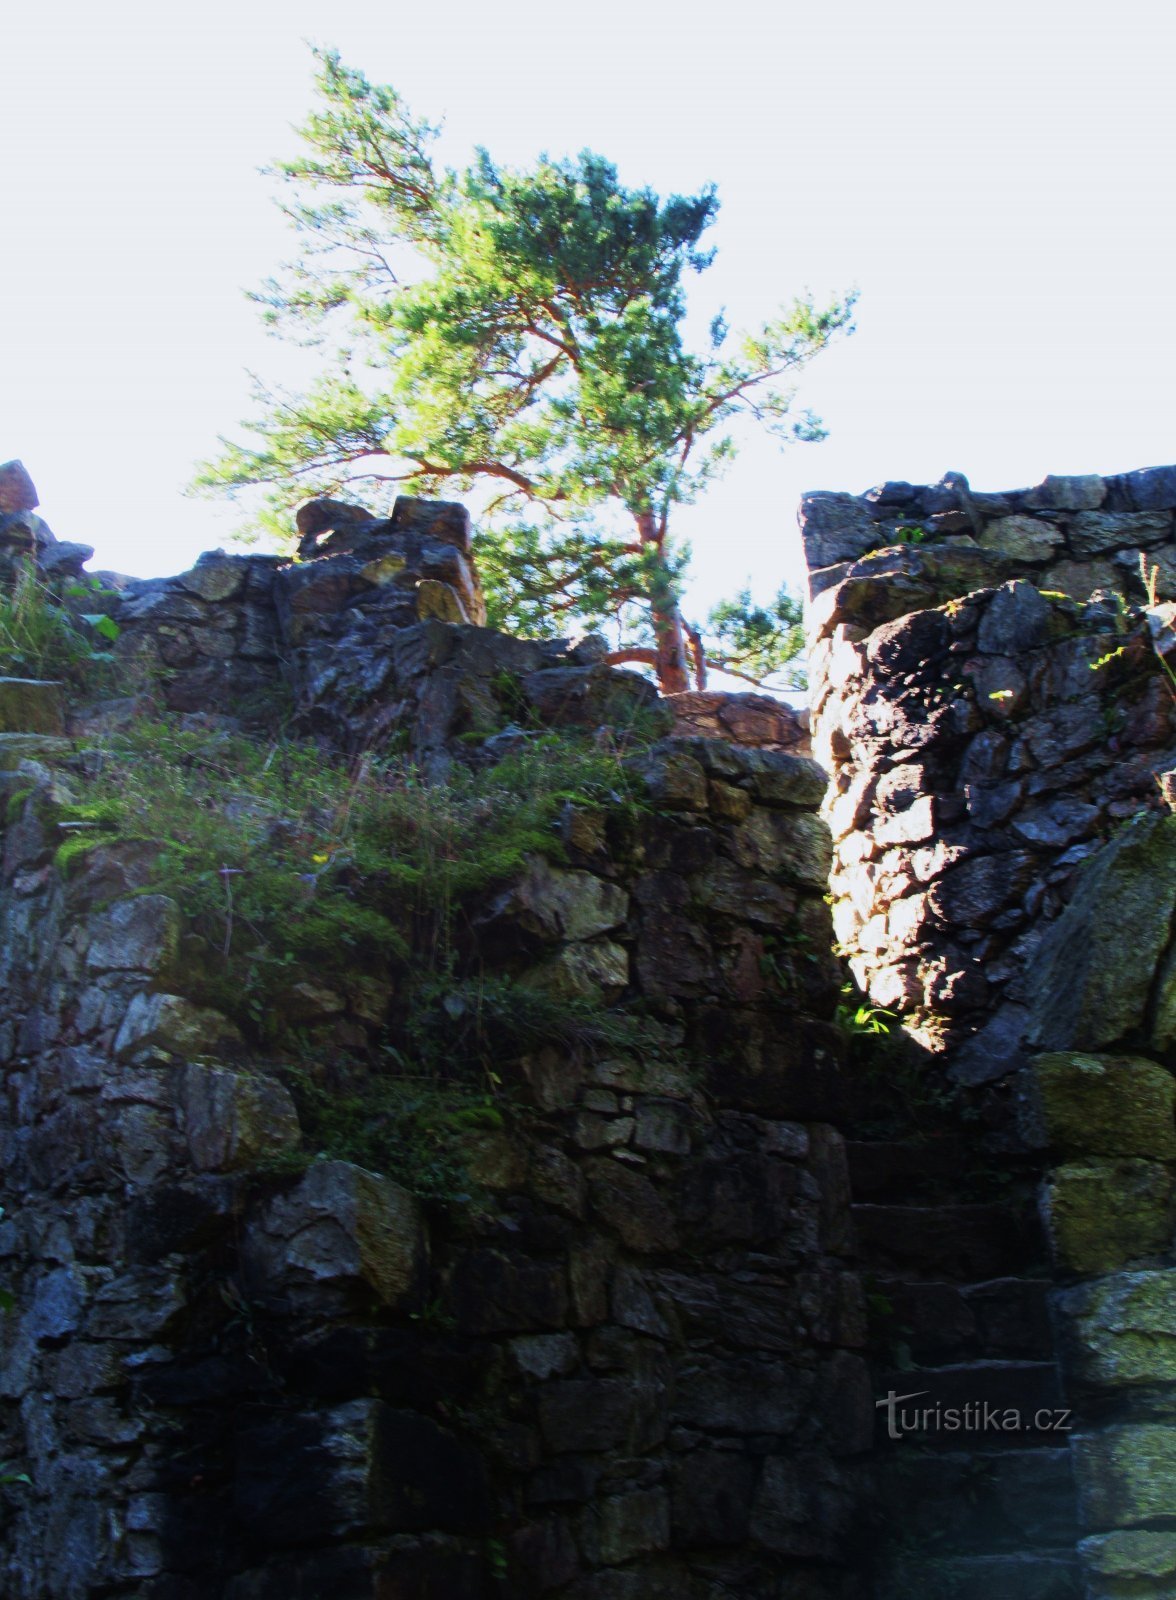 Τα ρομαντικά ερείπια του κάστρου Rychleby